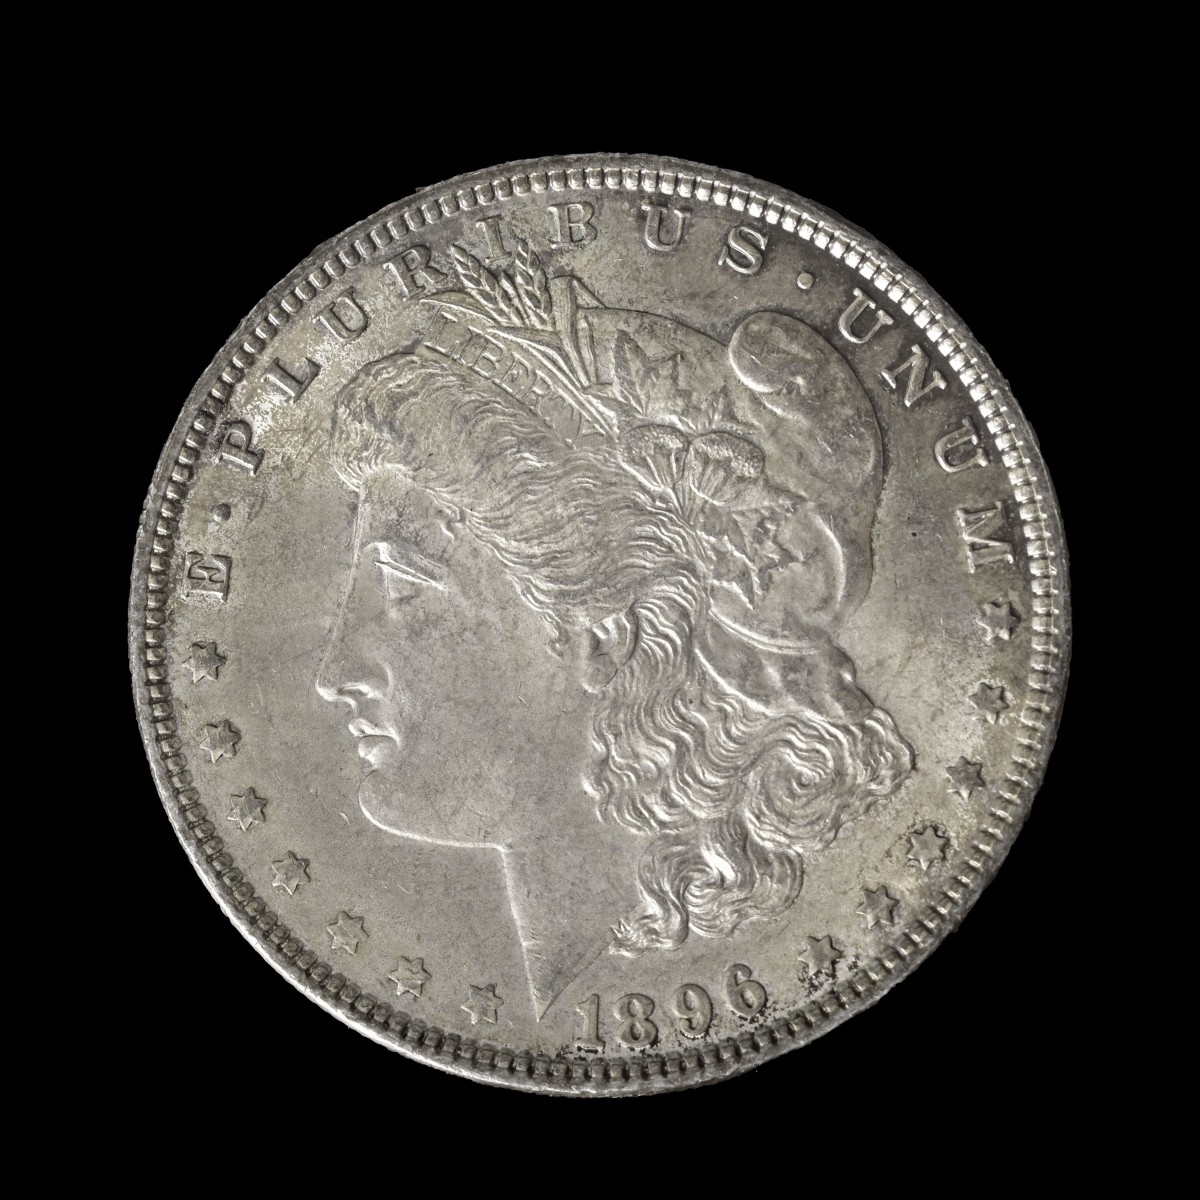 Six U.S. Silver Dollars